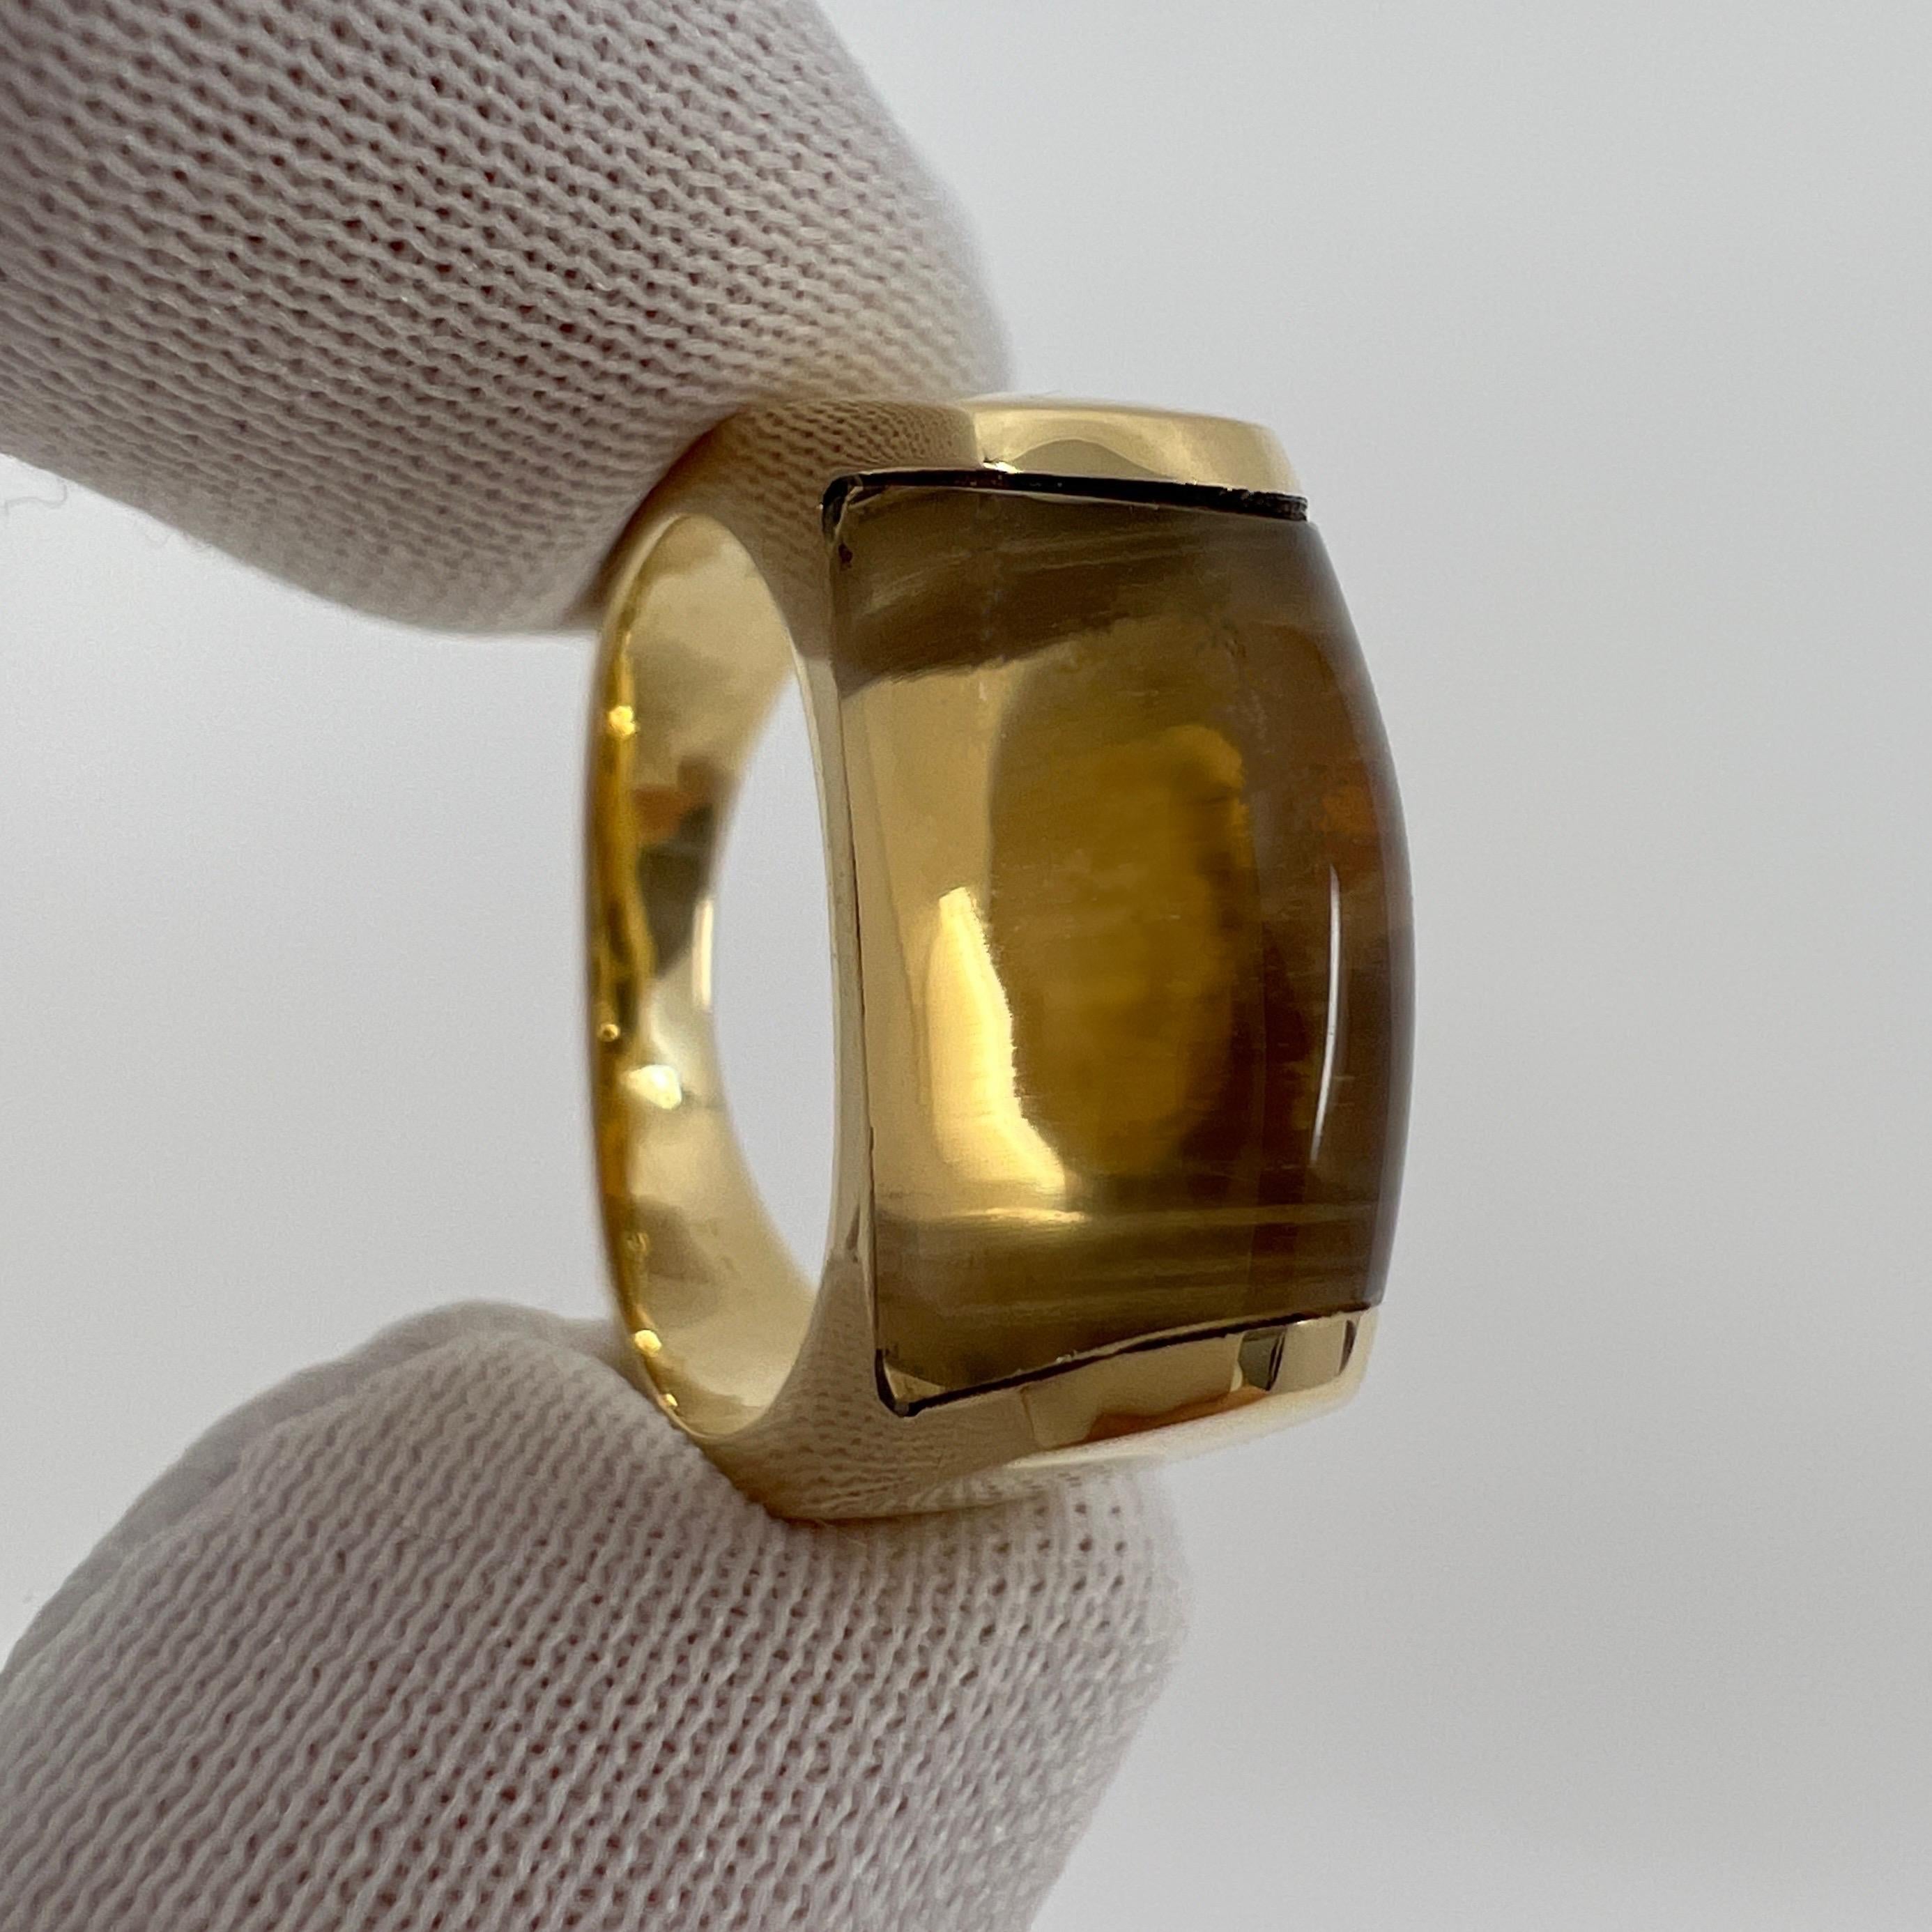 Rare Bvlgari Bulgari Tronchetto 18k Yellow Gold Yellow Citrine Ring with Box 3